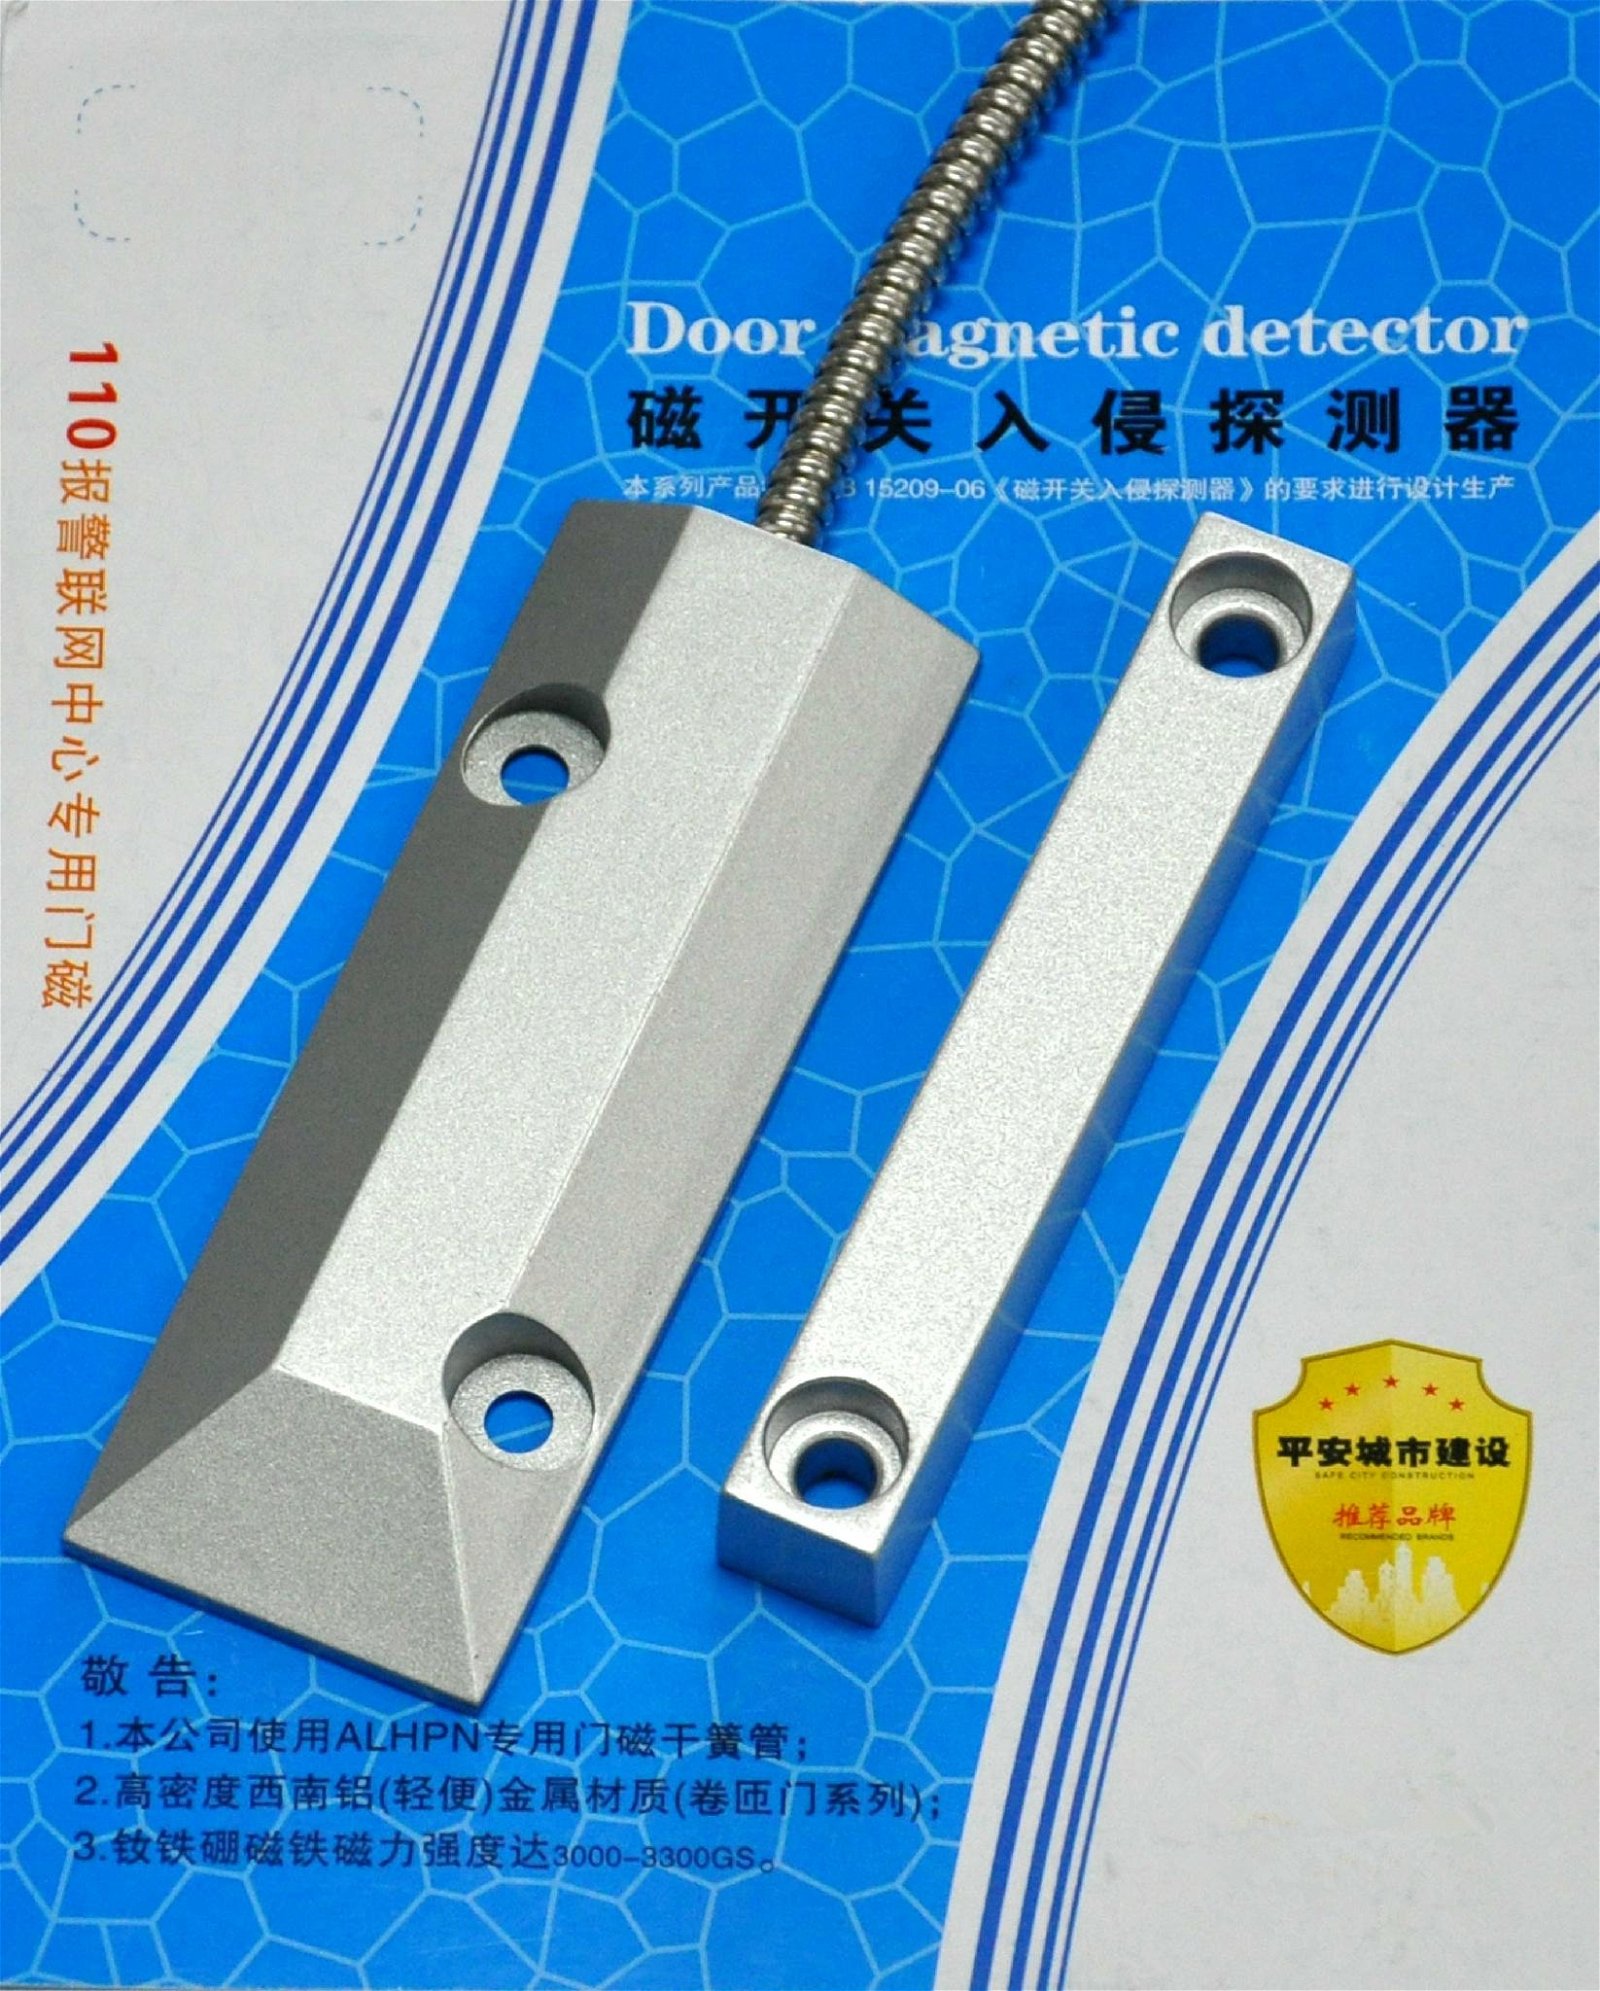 Door magnetic 3